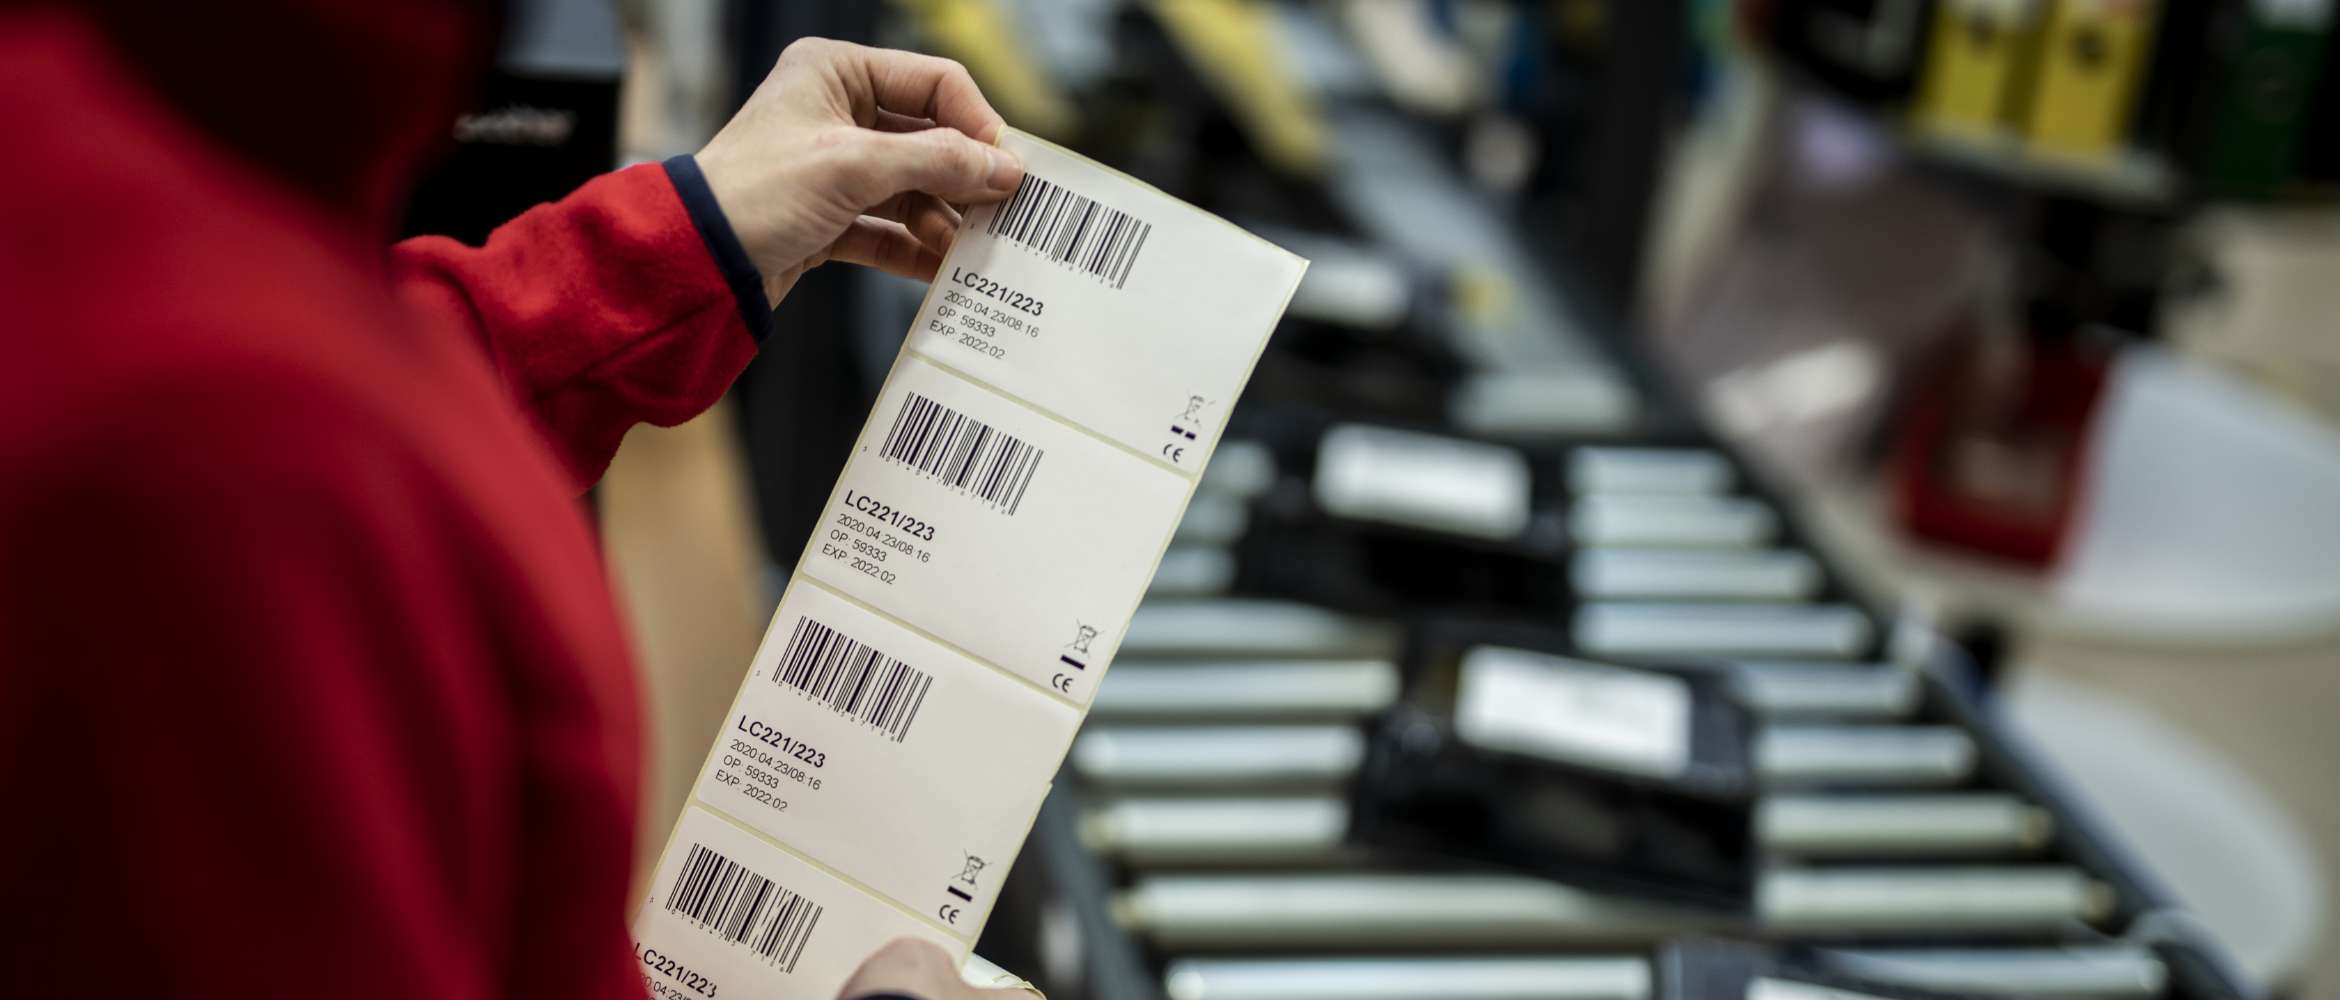 Ein Mitarbeiter betrachtet an einem Förderband in einem Produktions- und Logistikbetrieb eine gedruckte Barcode-Etikette, bevor er sie auf ein Paket klebt.